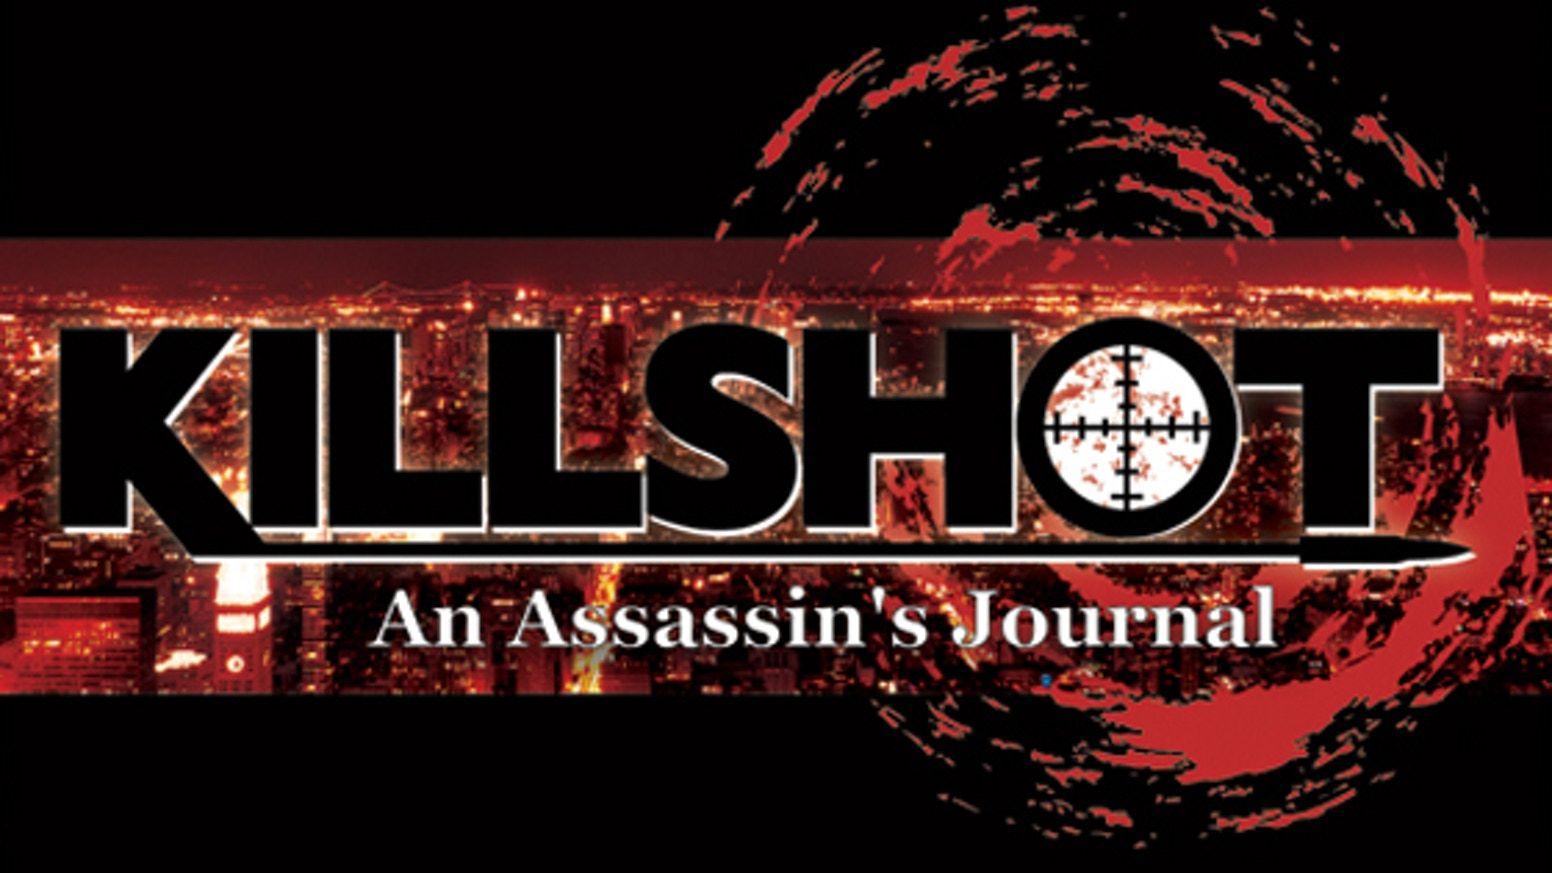 Killshot Logo - Killshot: An Assassin's Journal RPG by The Warden — Kickstarter